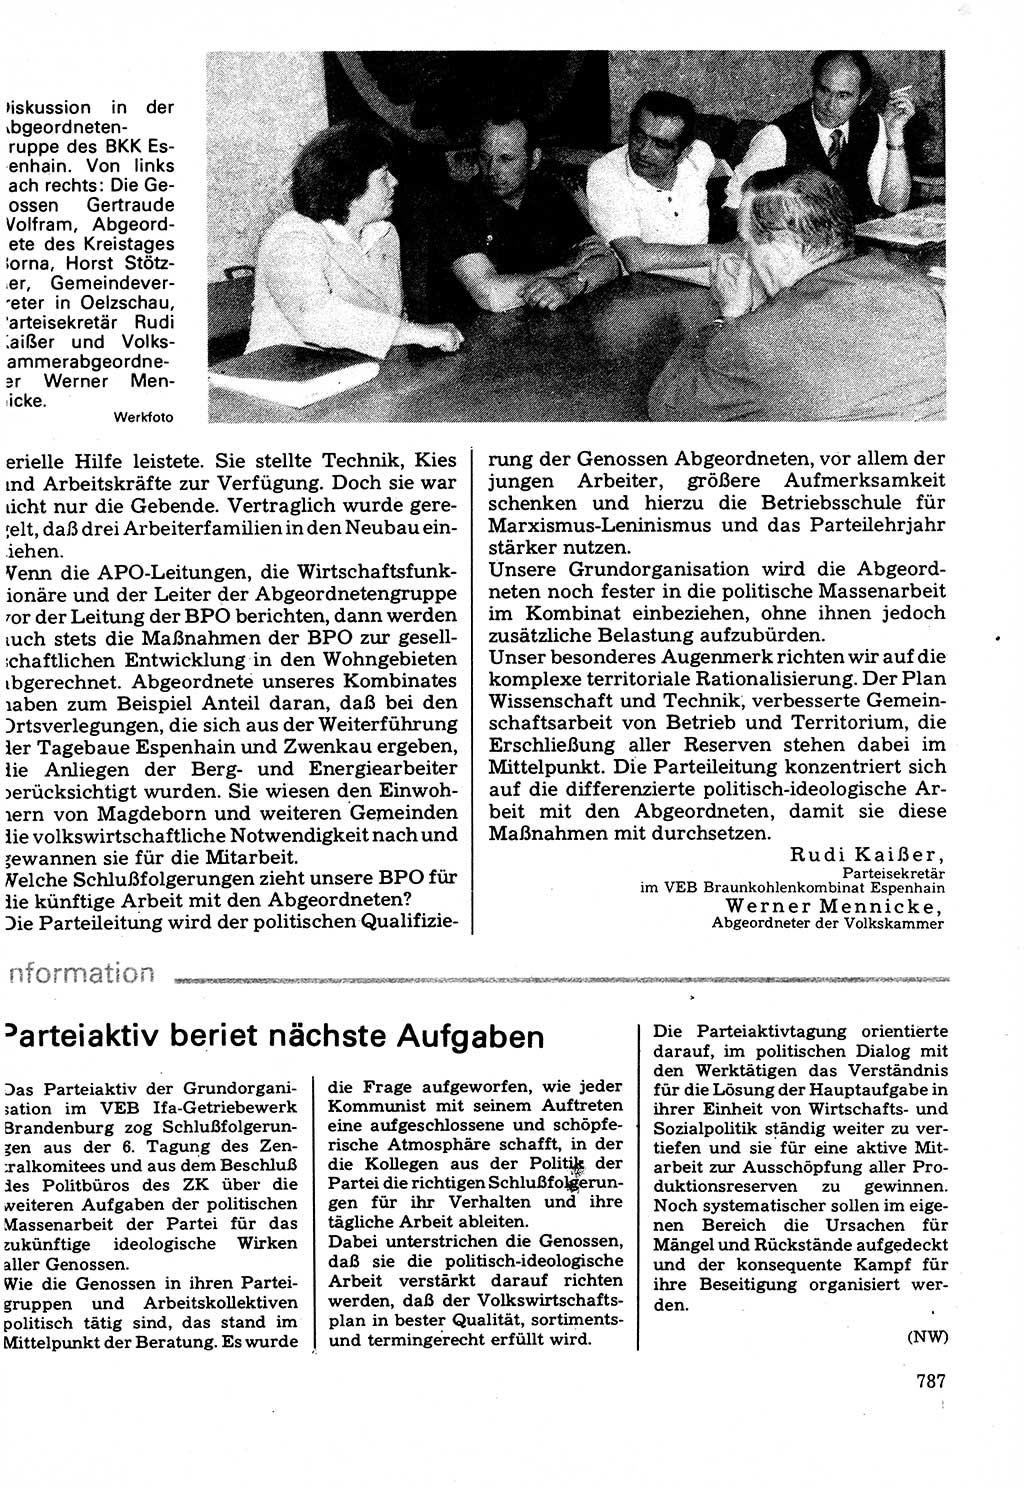 Neuer Weg (NW), Organ des Zentralkomitees (ZK) der SED (Sozialistische Einheitspartei Deutschlands) für Fragen des Parteilebens, 32. Jahrgang [Deutsche Demokratische Republik (DDR)] 1977, Seite 787 (NW ZK SED DDR 1977, S. 787)